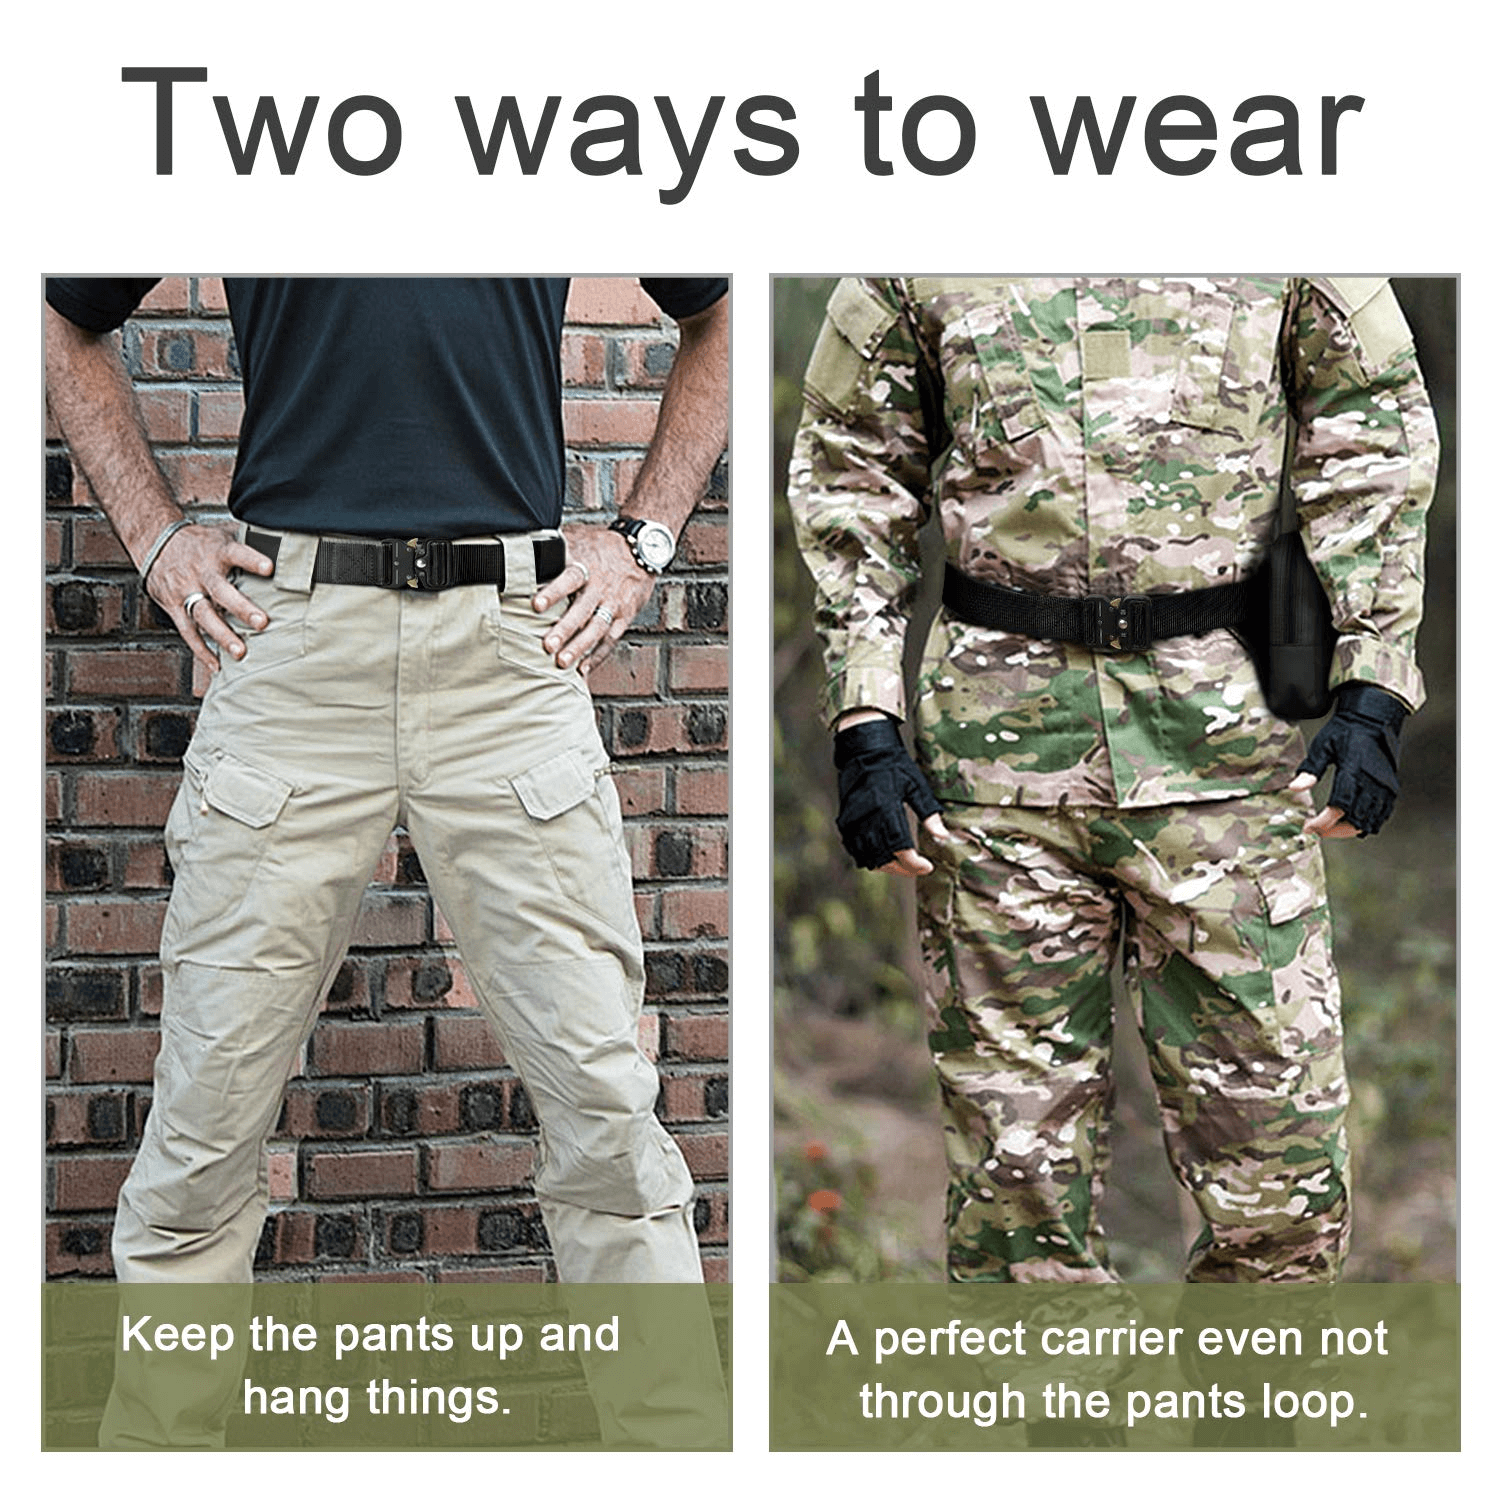 BOW-TAC tactical belts - Black heavy duty belt - Two ways to wear